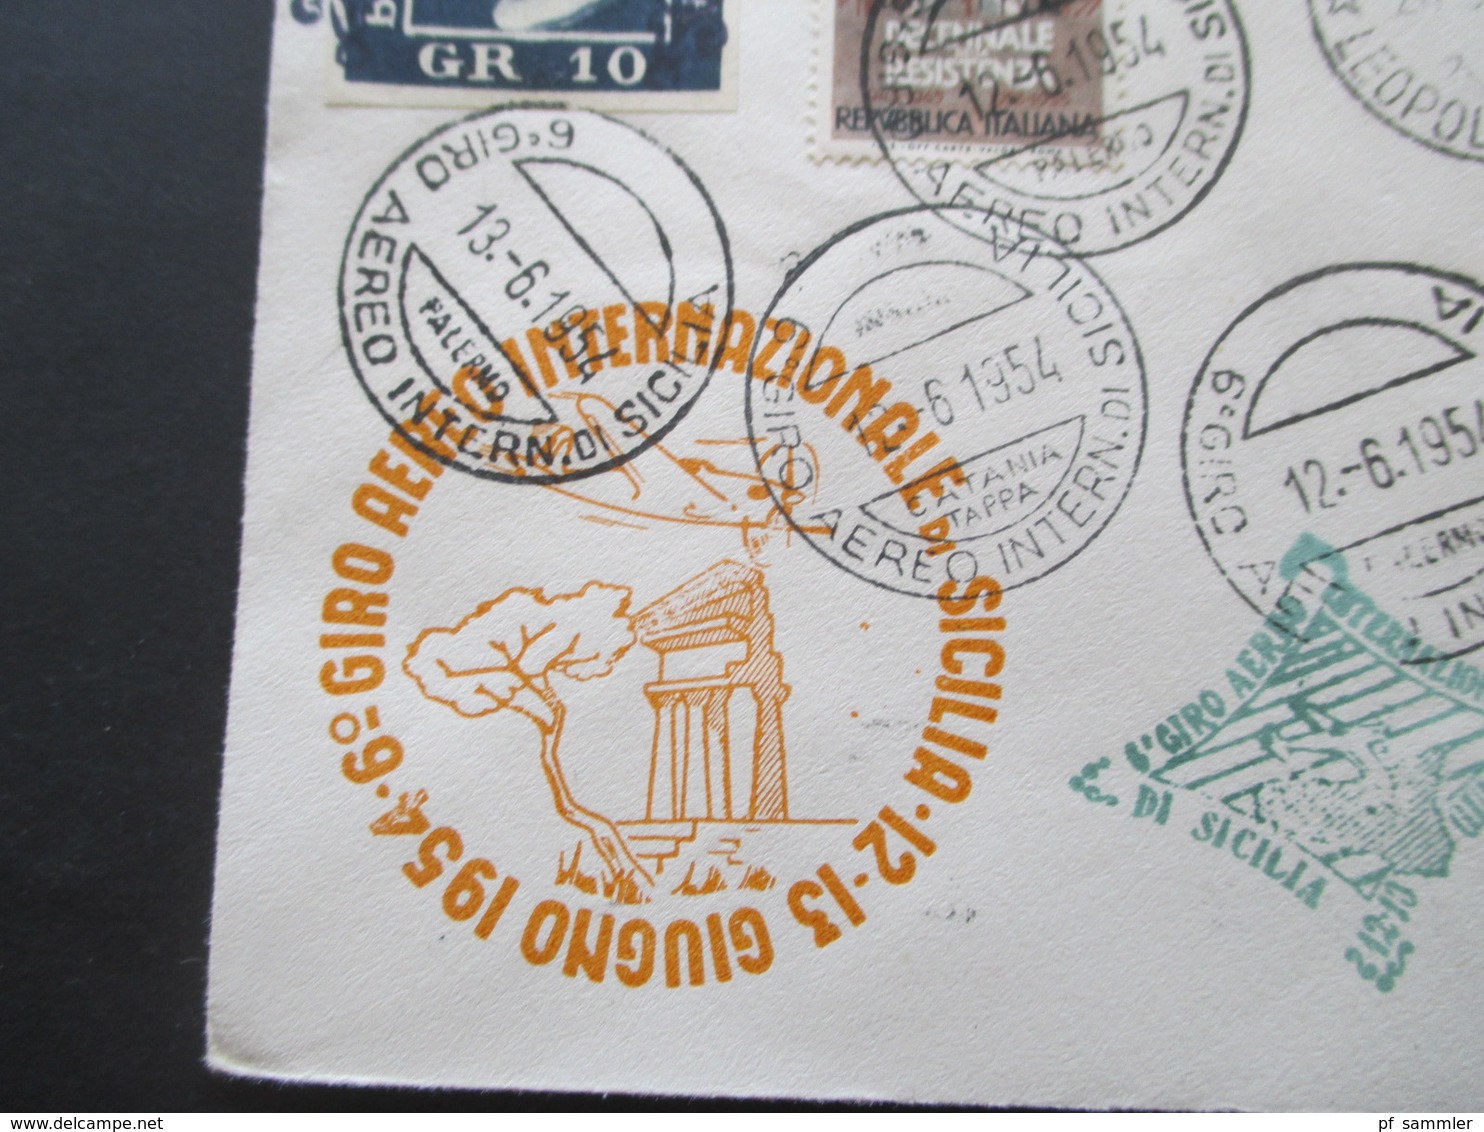 Italien / Belgisch Congo 1954 Luftpost / Aeroclub Palermo / Giro Aereo Intern Di Sicilia Mit Original Unterschrift Pilot - Poste Aérienne